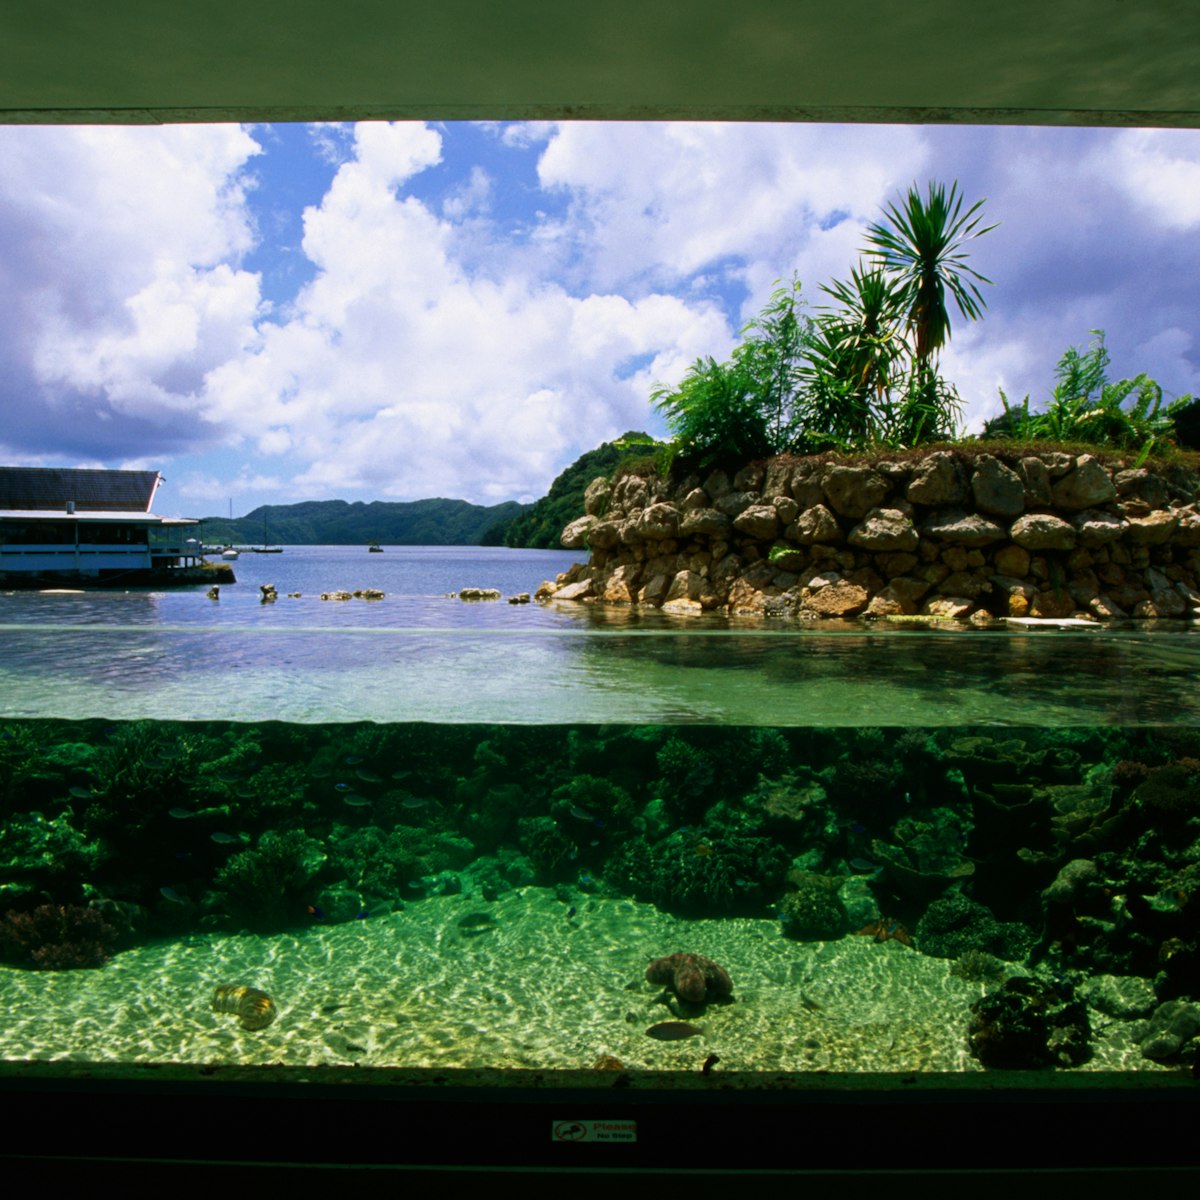 Underwater viewing area, Pulau Aquarium.